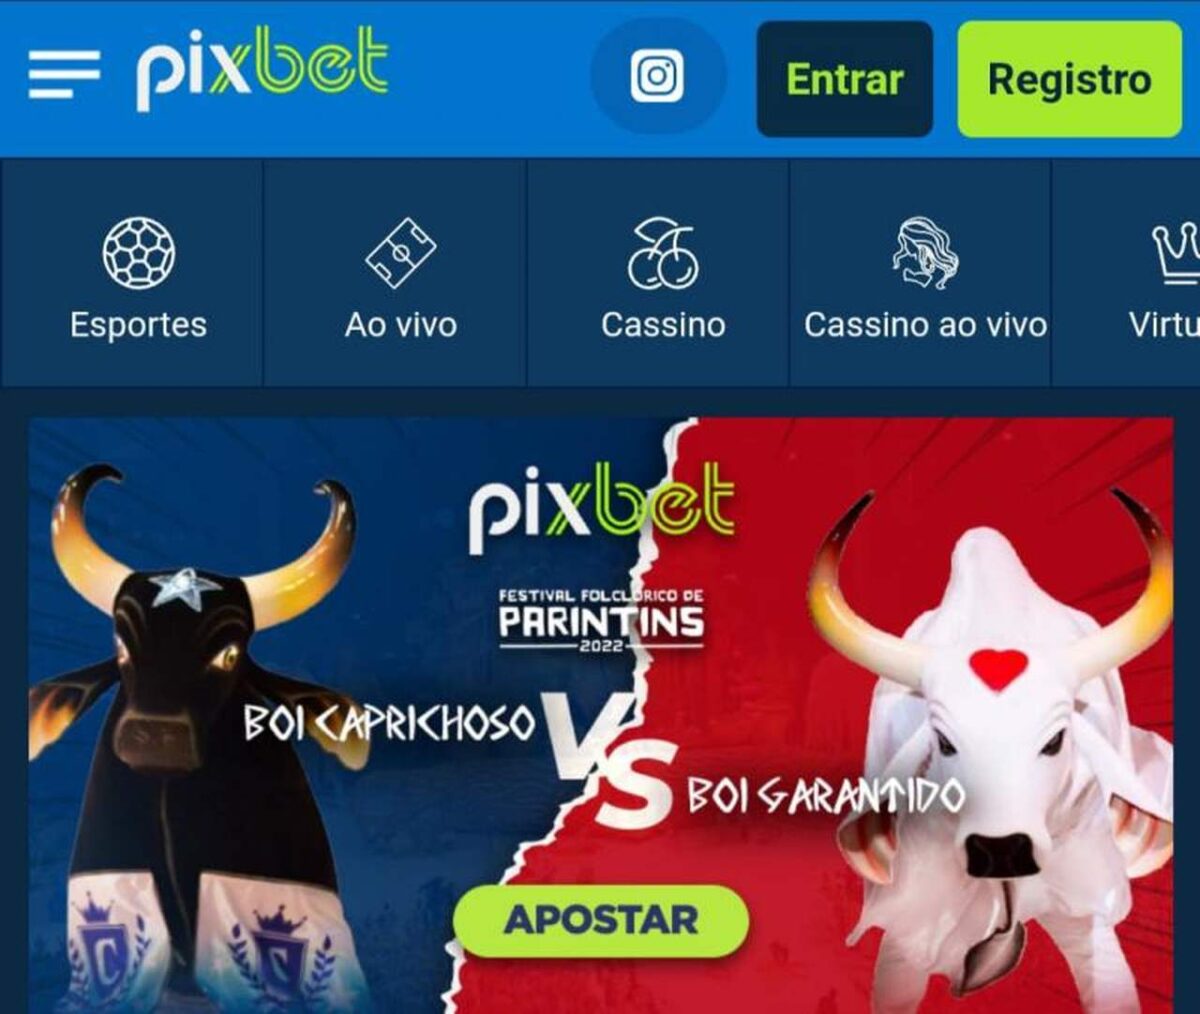 Casa de apostas Pixbet será patrocinadora dos Bois Garantido e Caprichoso